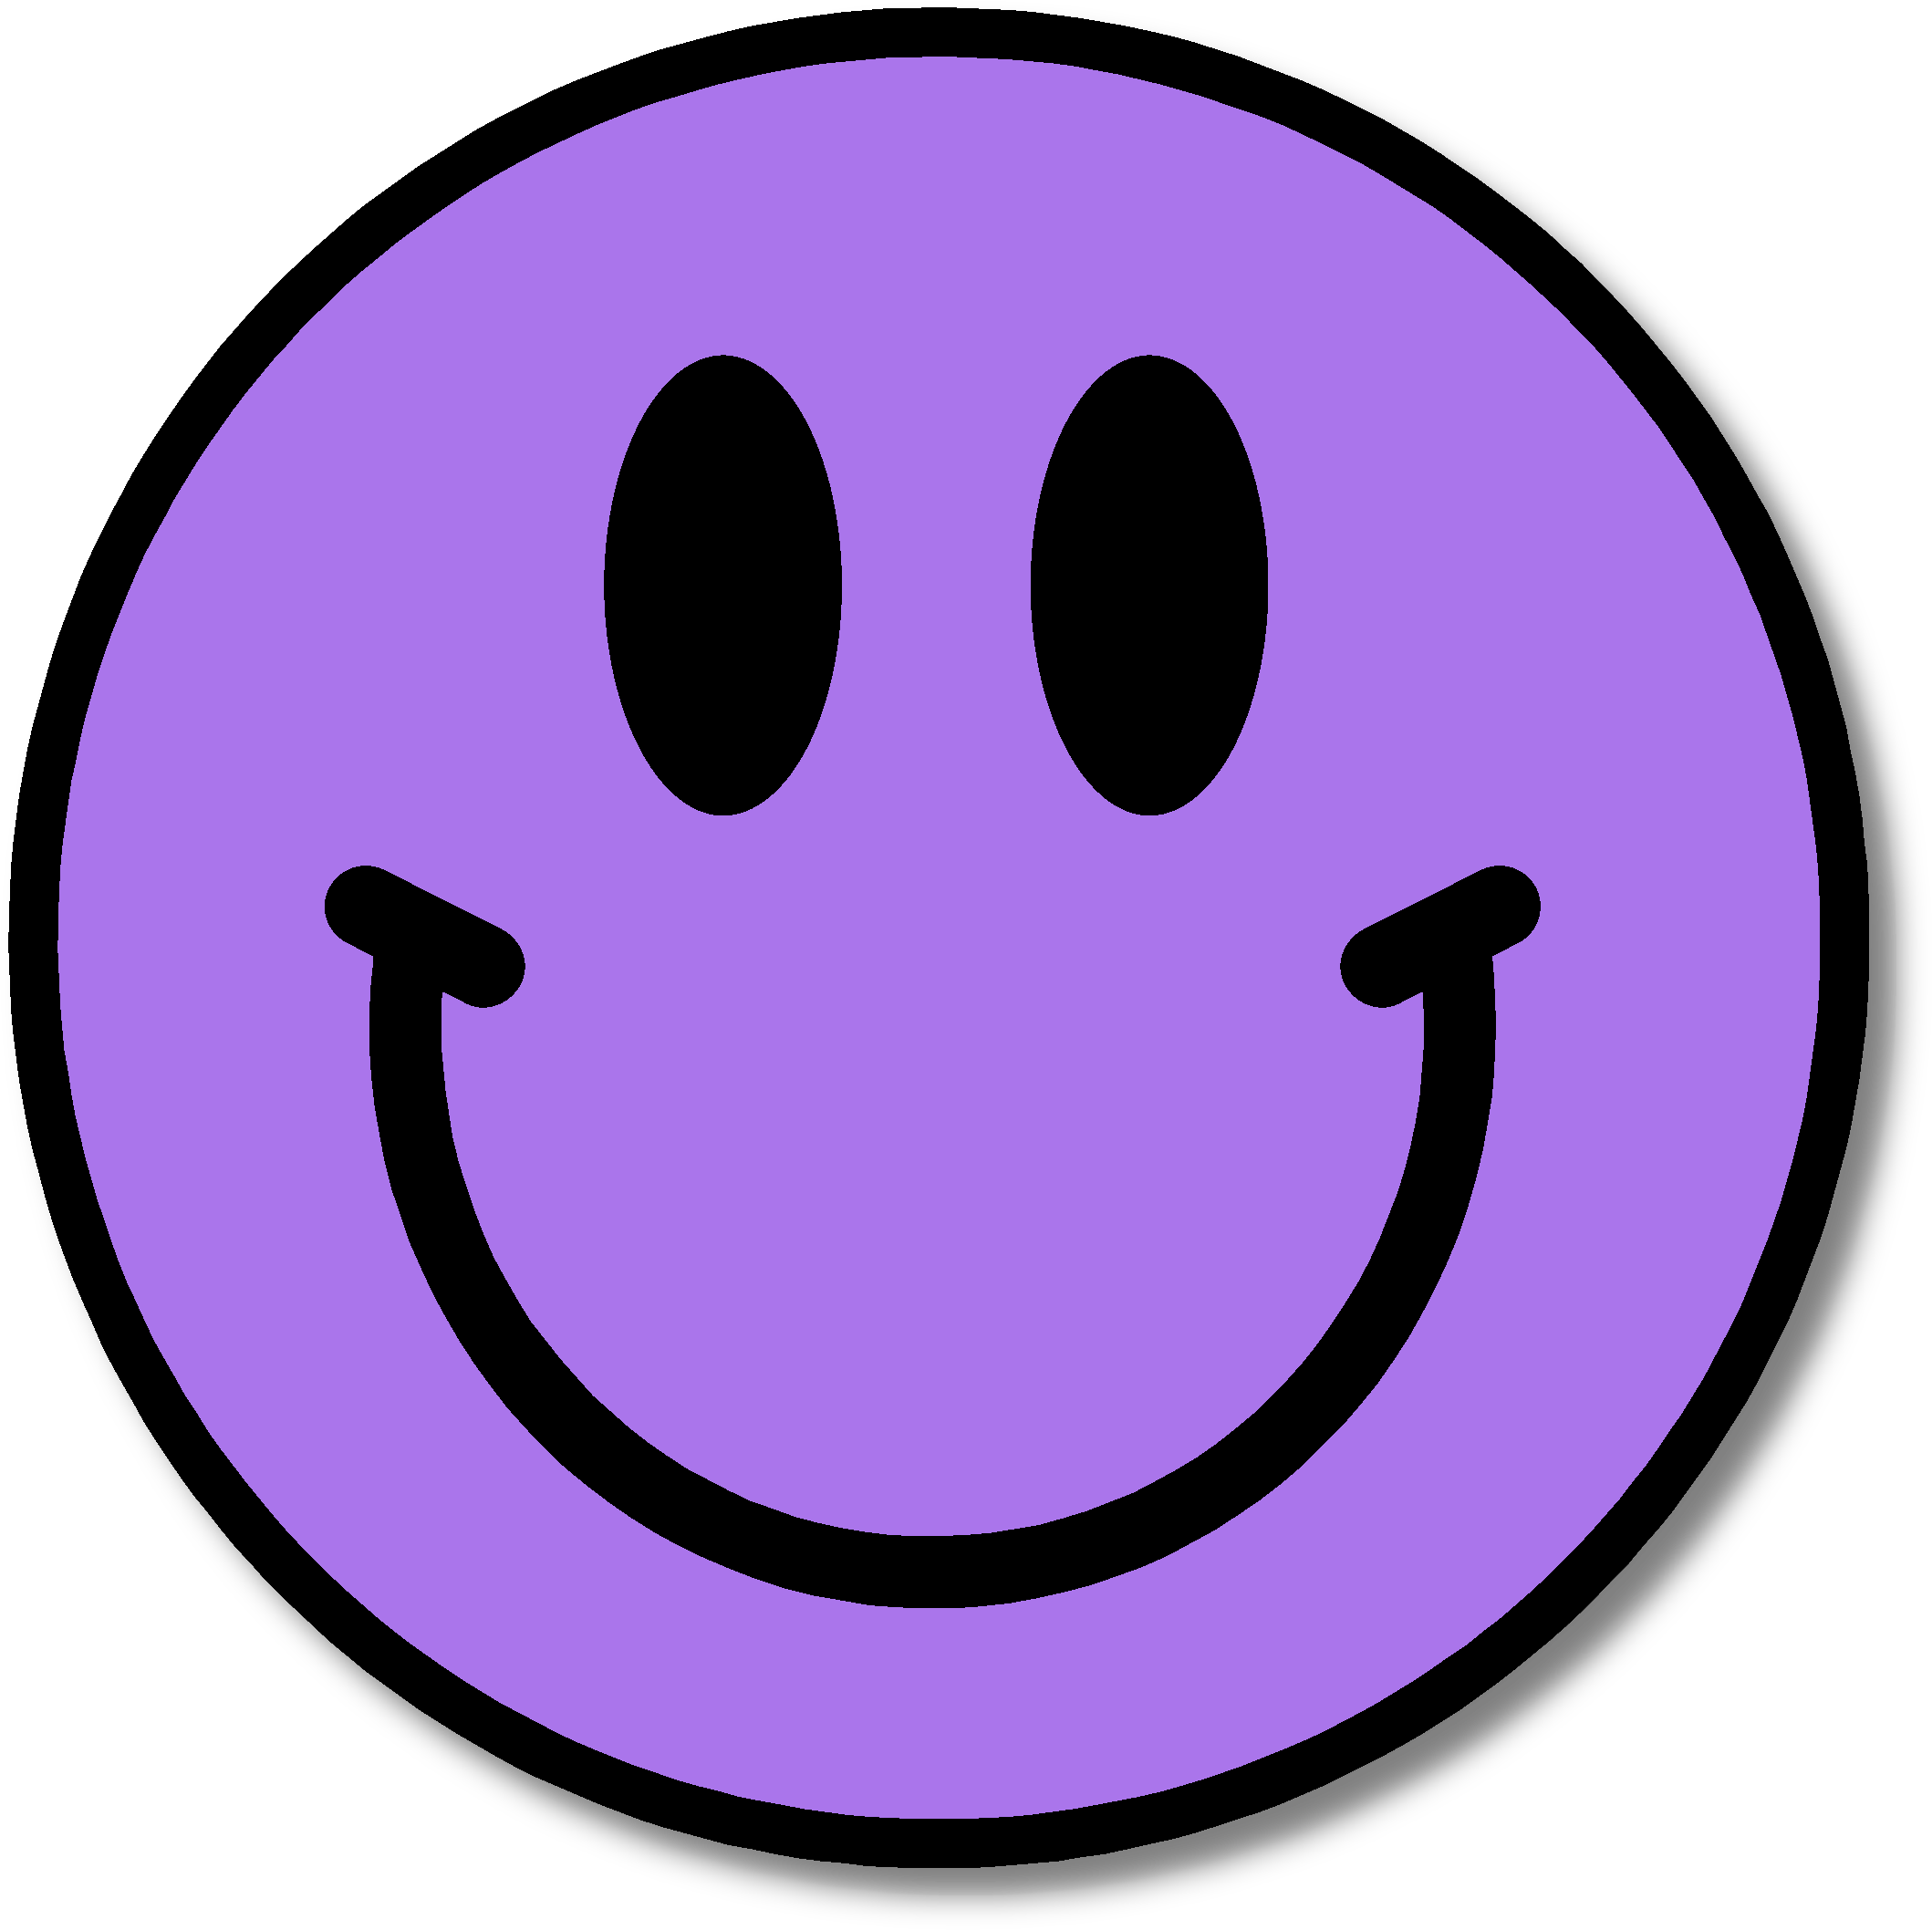 Smileys logo free collection. Smiley clipart smiley face